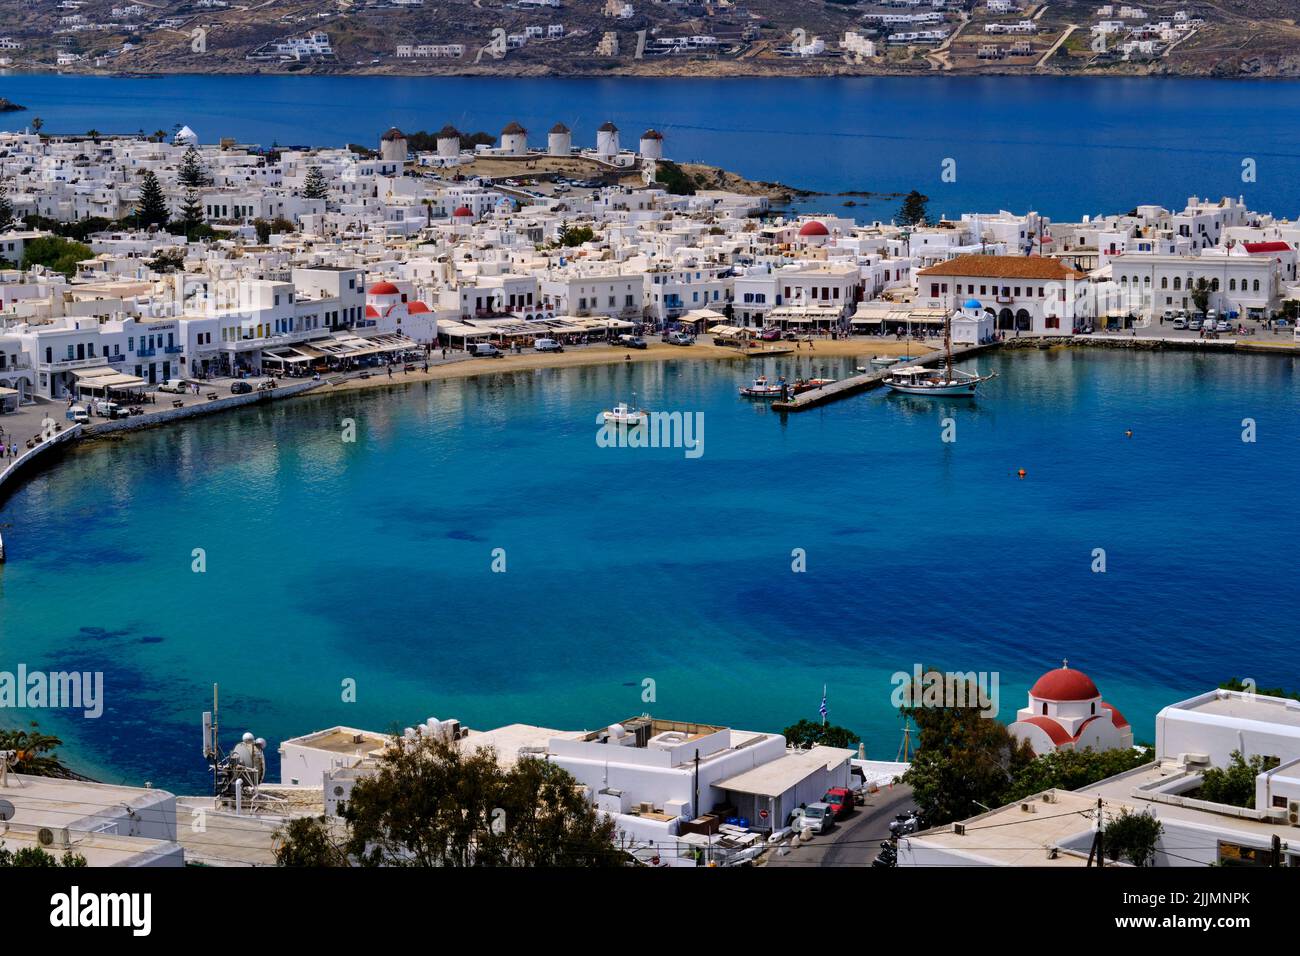 Greece, Cyclades, Mykonos island, Chora, Mykonos town Stock Photo